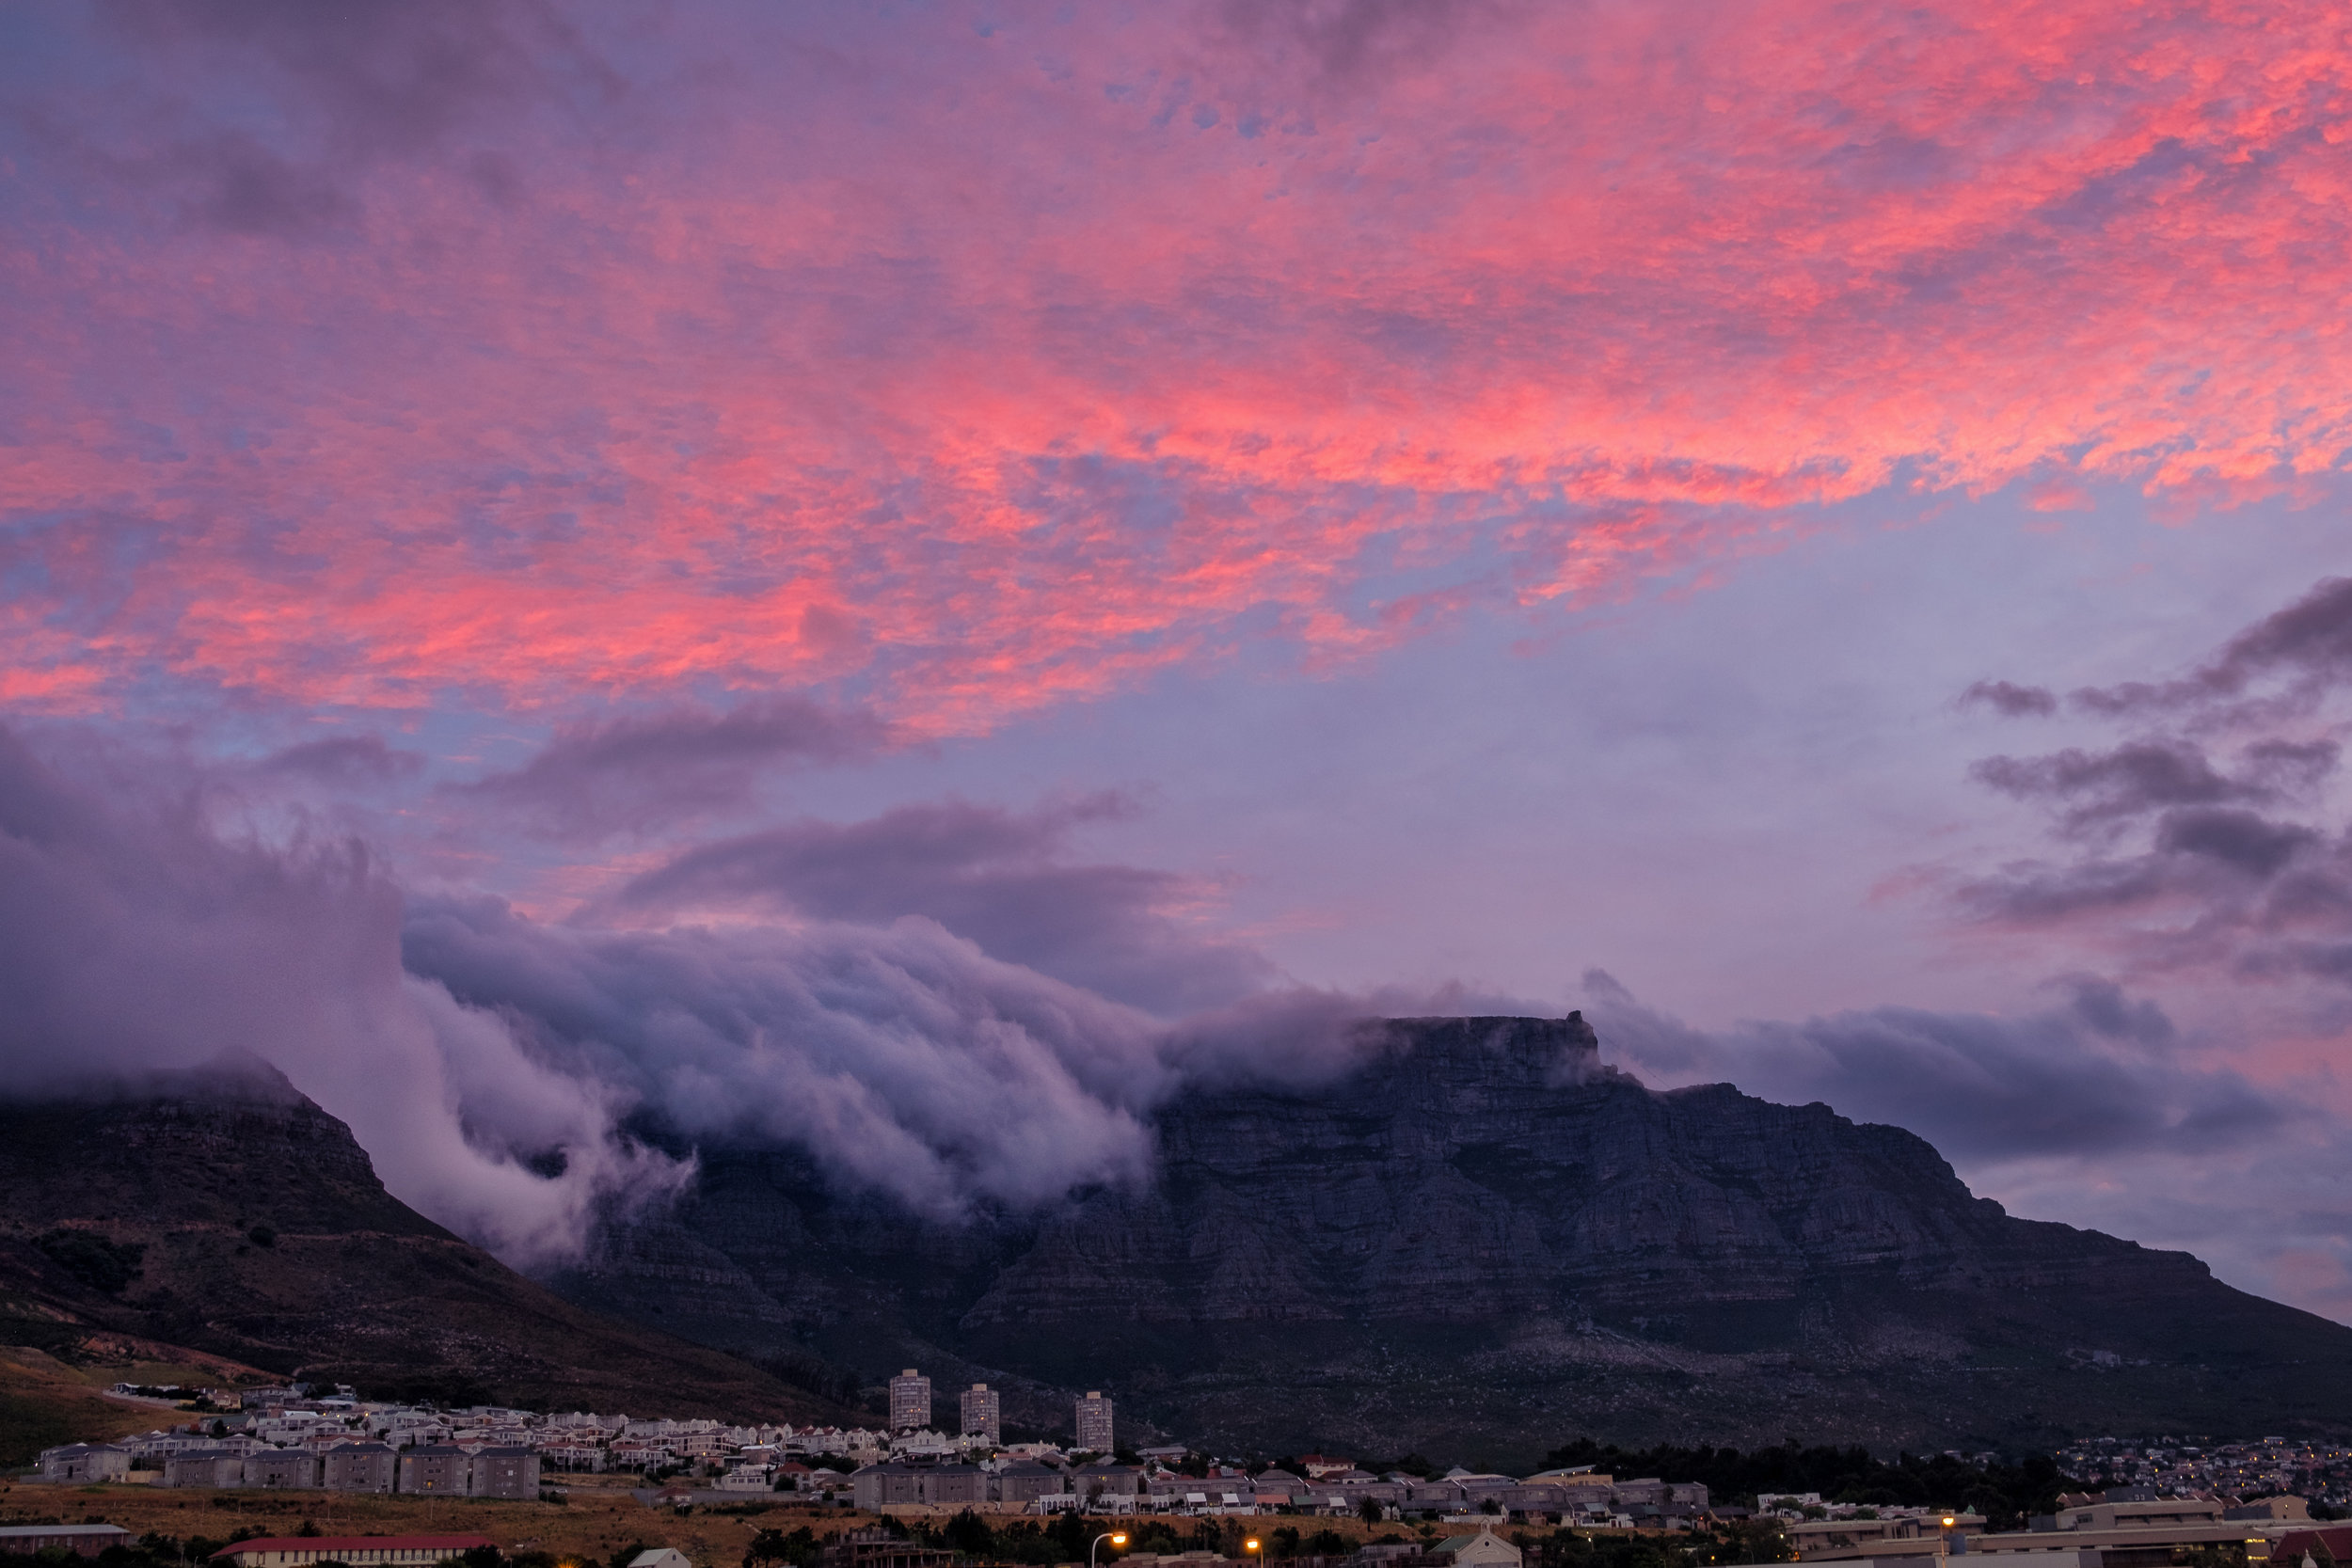  Table Mountain, Cape Town. November, 2017 